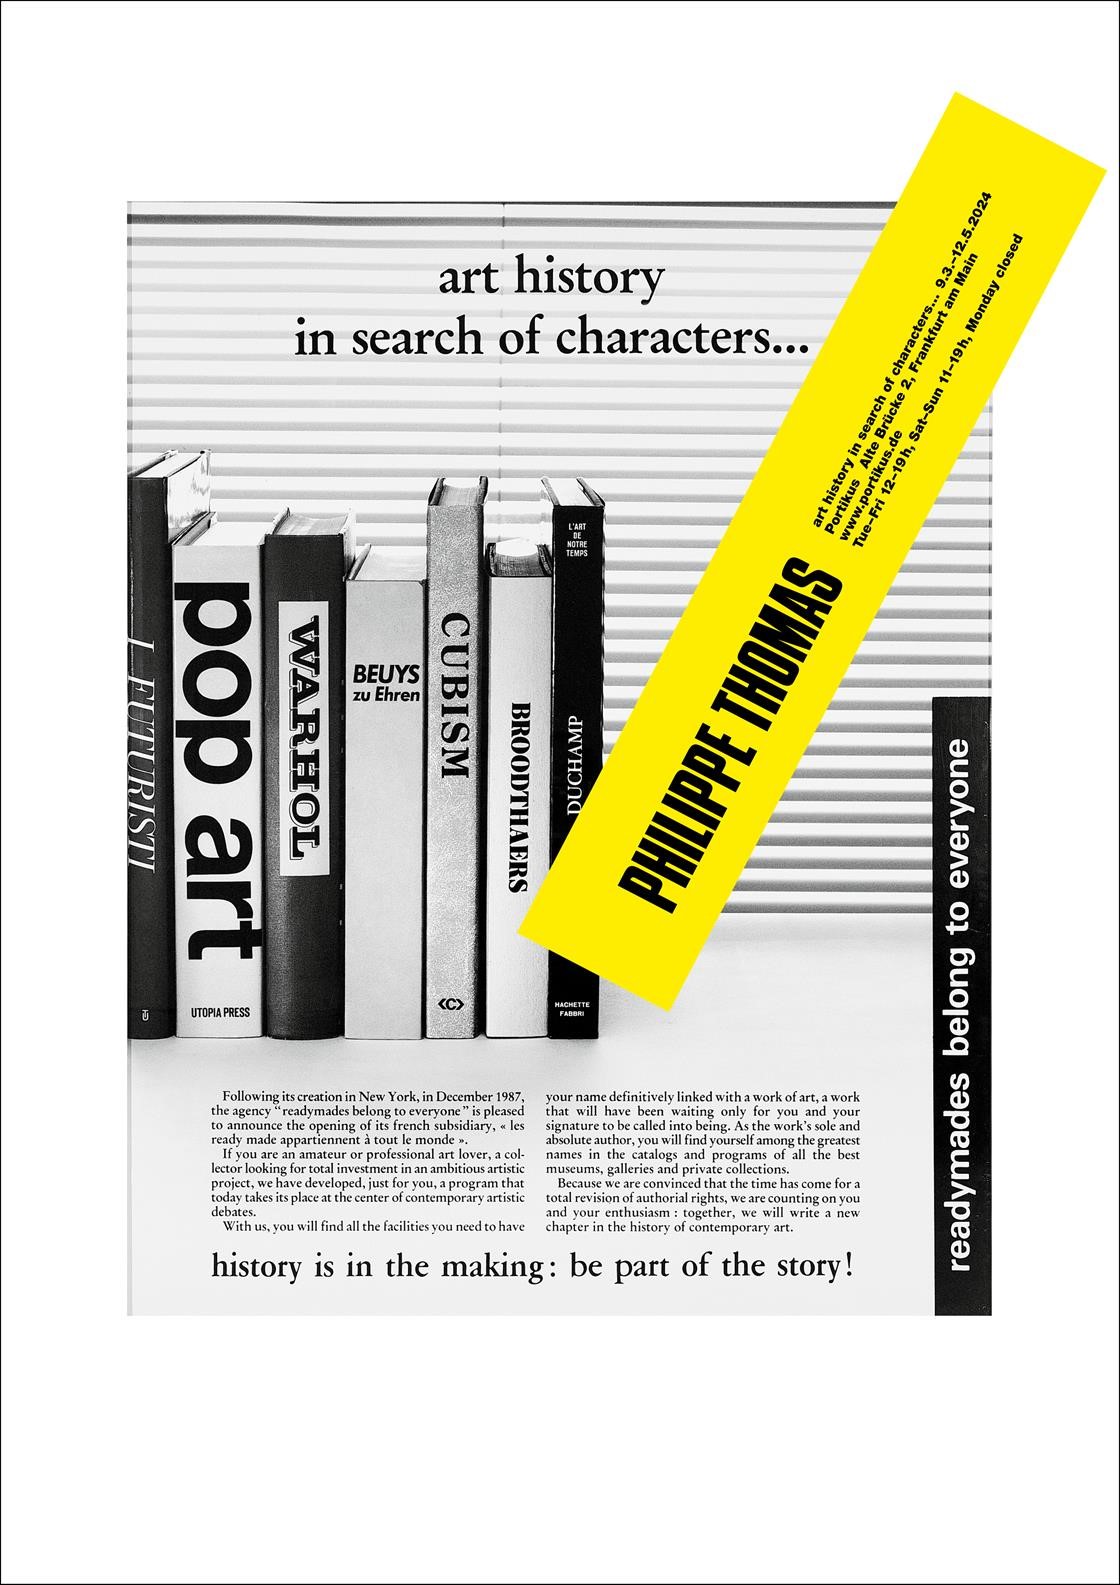 Enlarge image: Plakat mit Titel, Ausstellungsdaten und Text vor einem schwarz-weißem Bild mit Büchern über Kunst